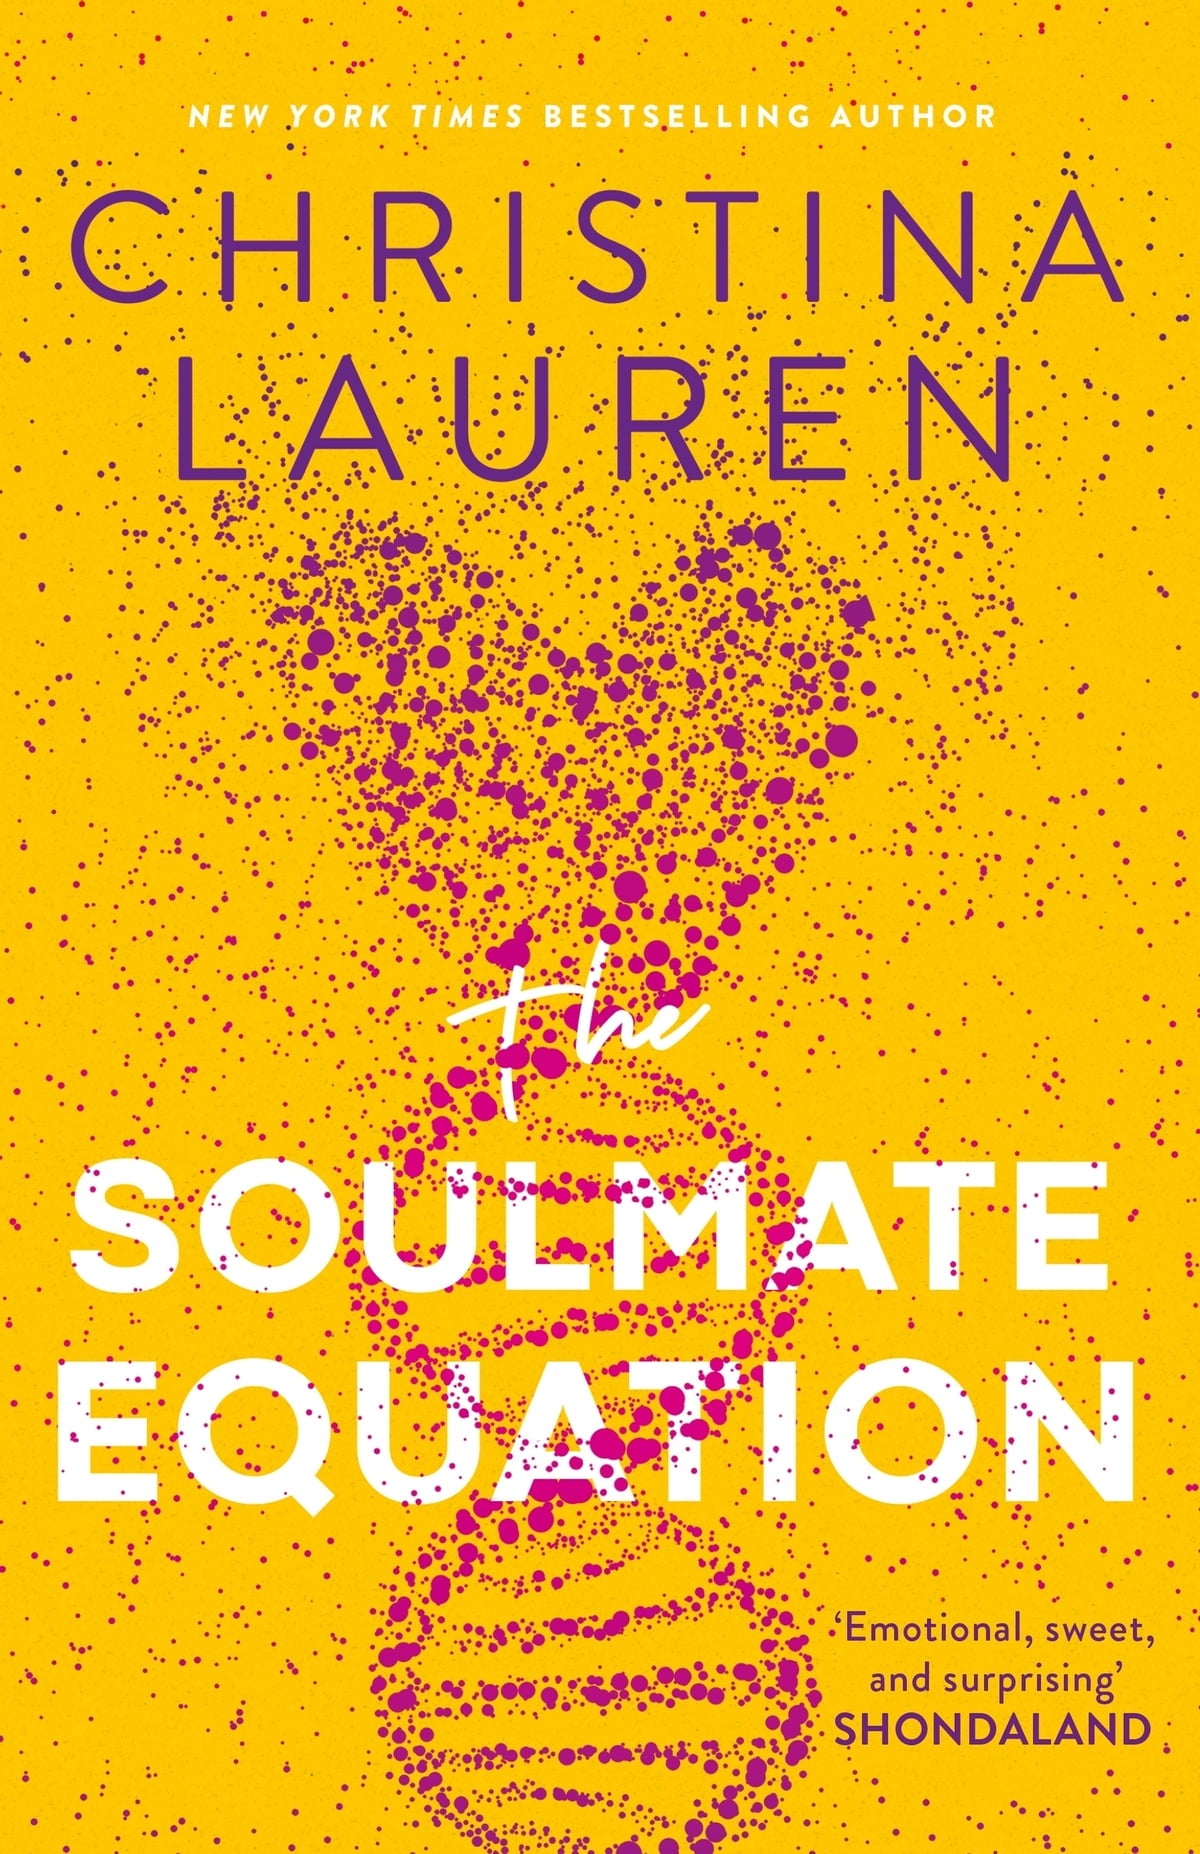 A equação da alma gêmea por Christina Lauren